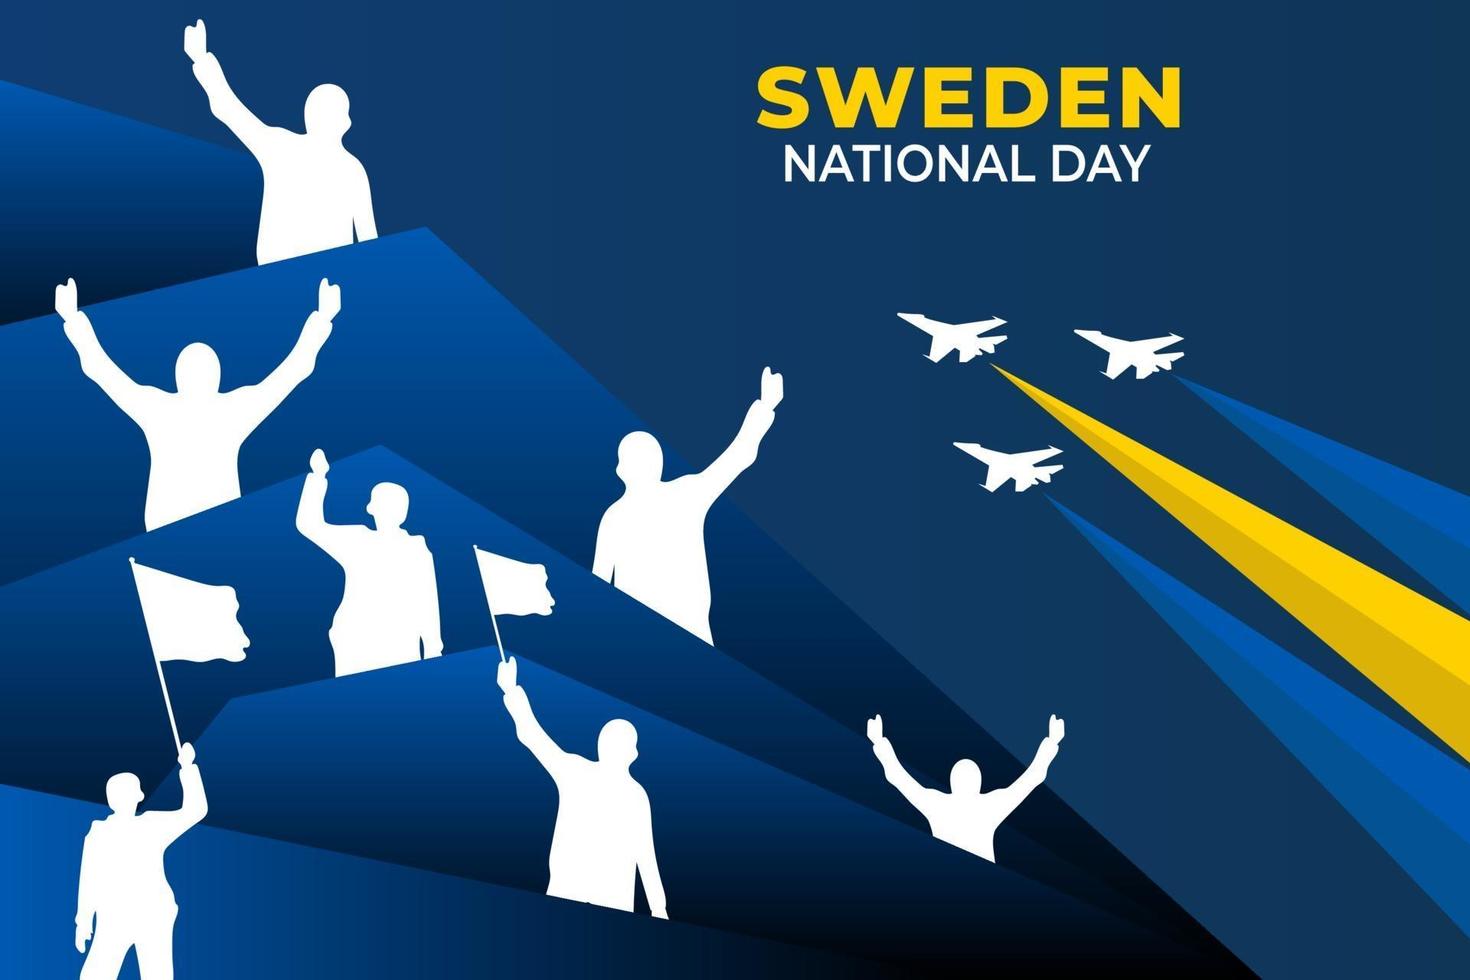 dia nacional da suécia. comemorado anualmente em 6 de junho na Suécia. feliz feriado nacional da liberdade. bandeira da Suécia. design de cartaz patriótico. vetor